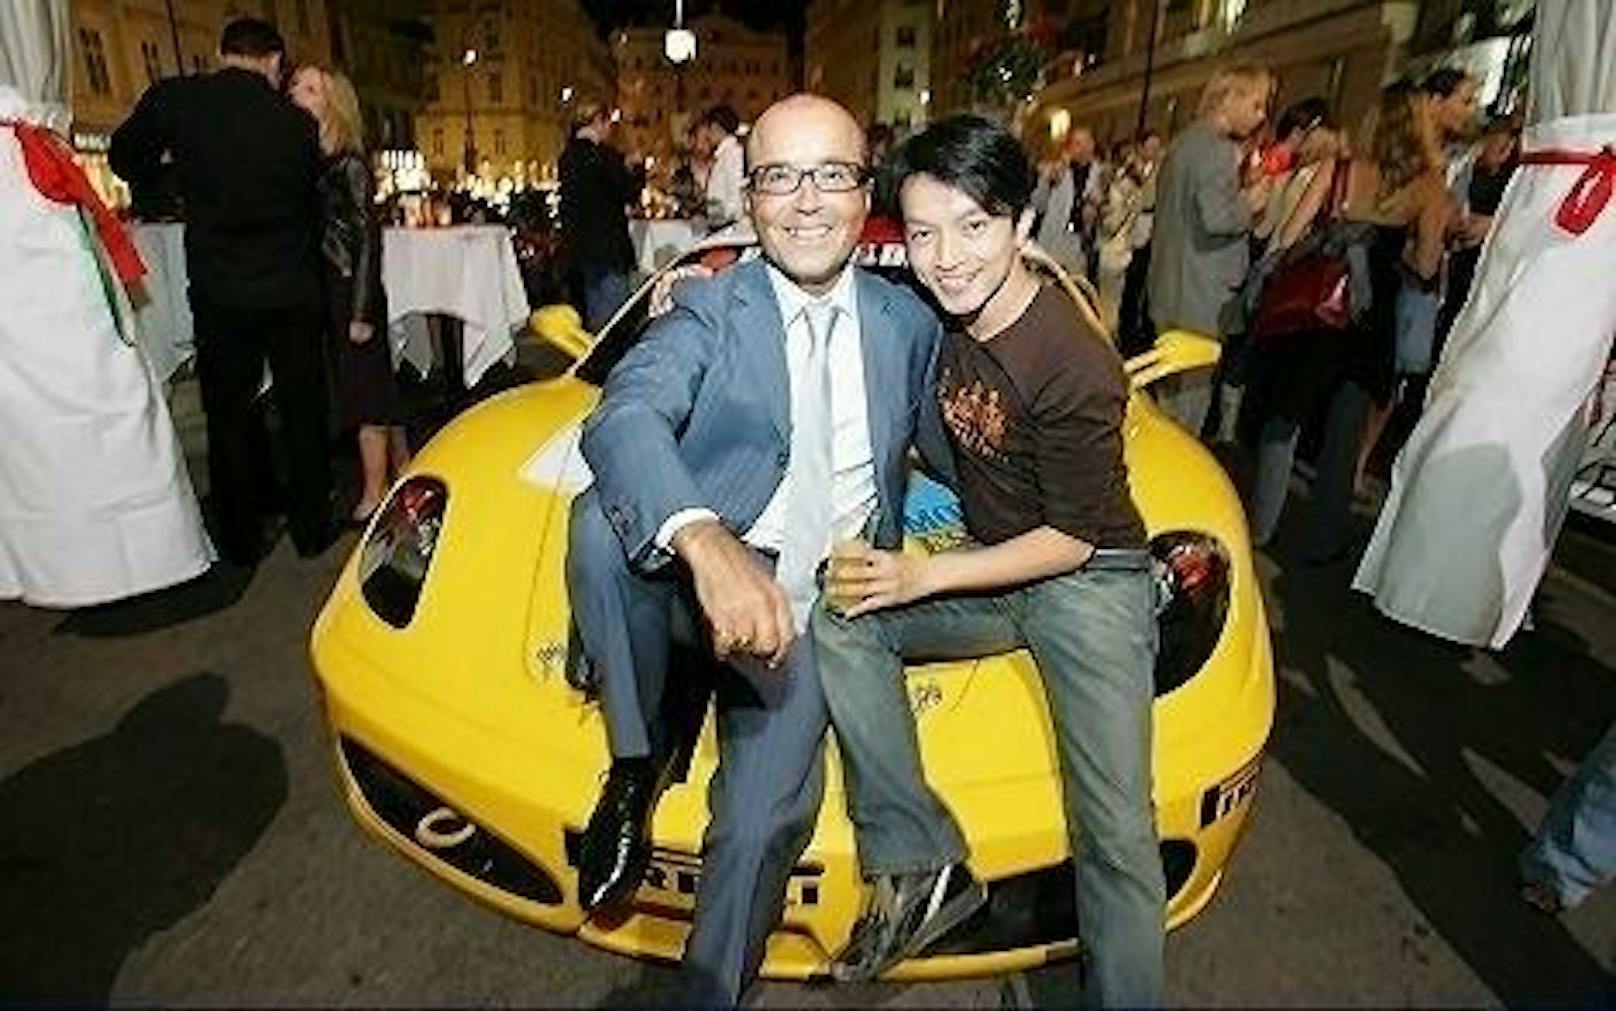 Luigi Barbaro mit Designer La Hong beim Ferrari-Fest